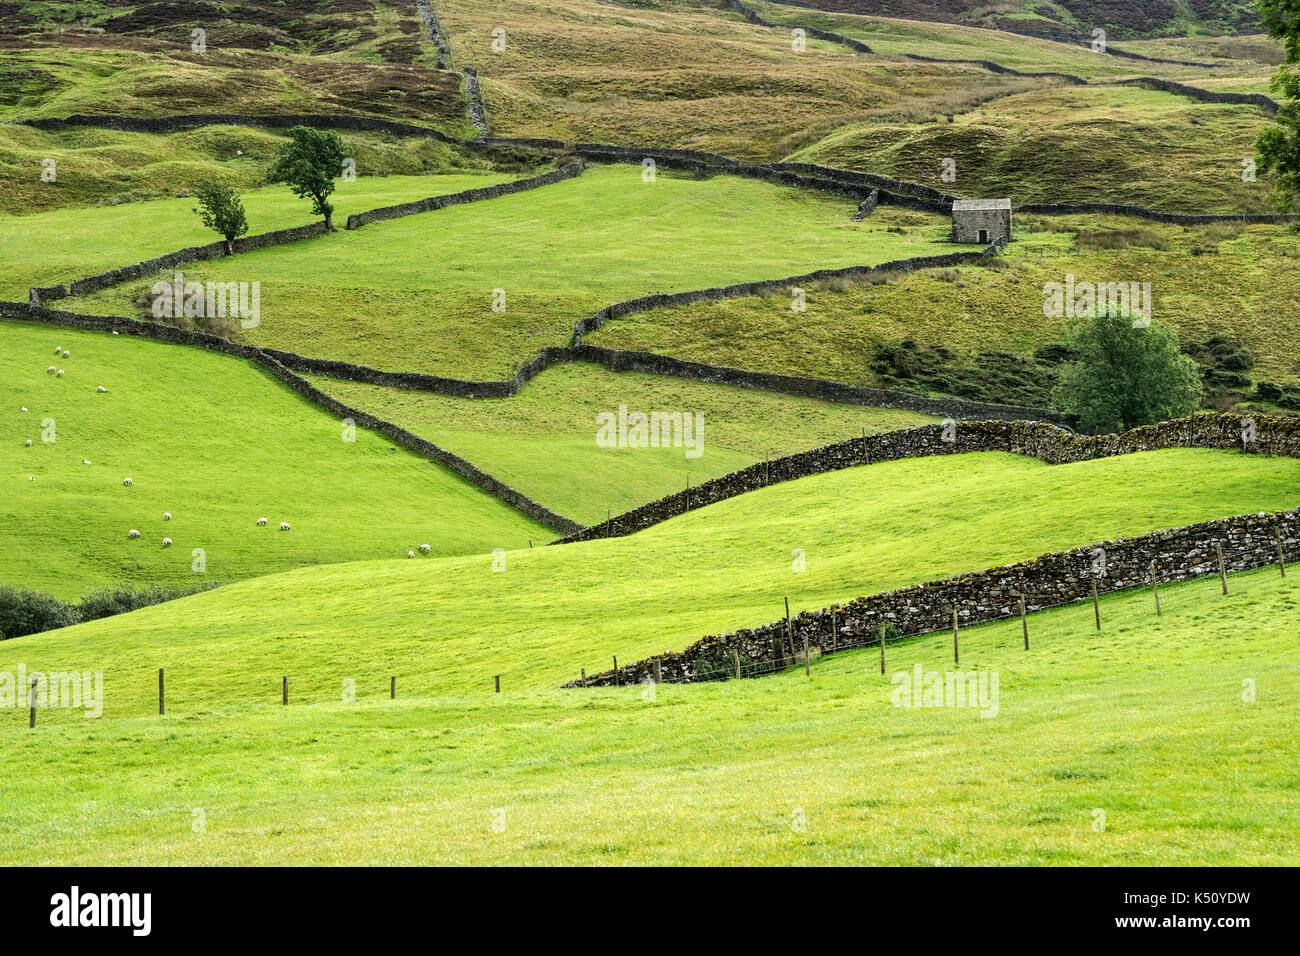 Ein traditionelles Yorkshire Dales Kulturlandschaft von Trockenmauern, die Felder und die Scheune in der Nähe von Keld, Swaledale, Yorkshire Dales, Großbritannien Stockfoto